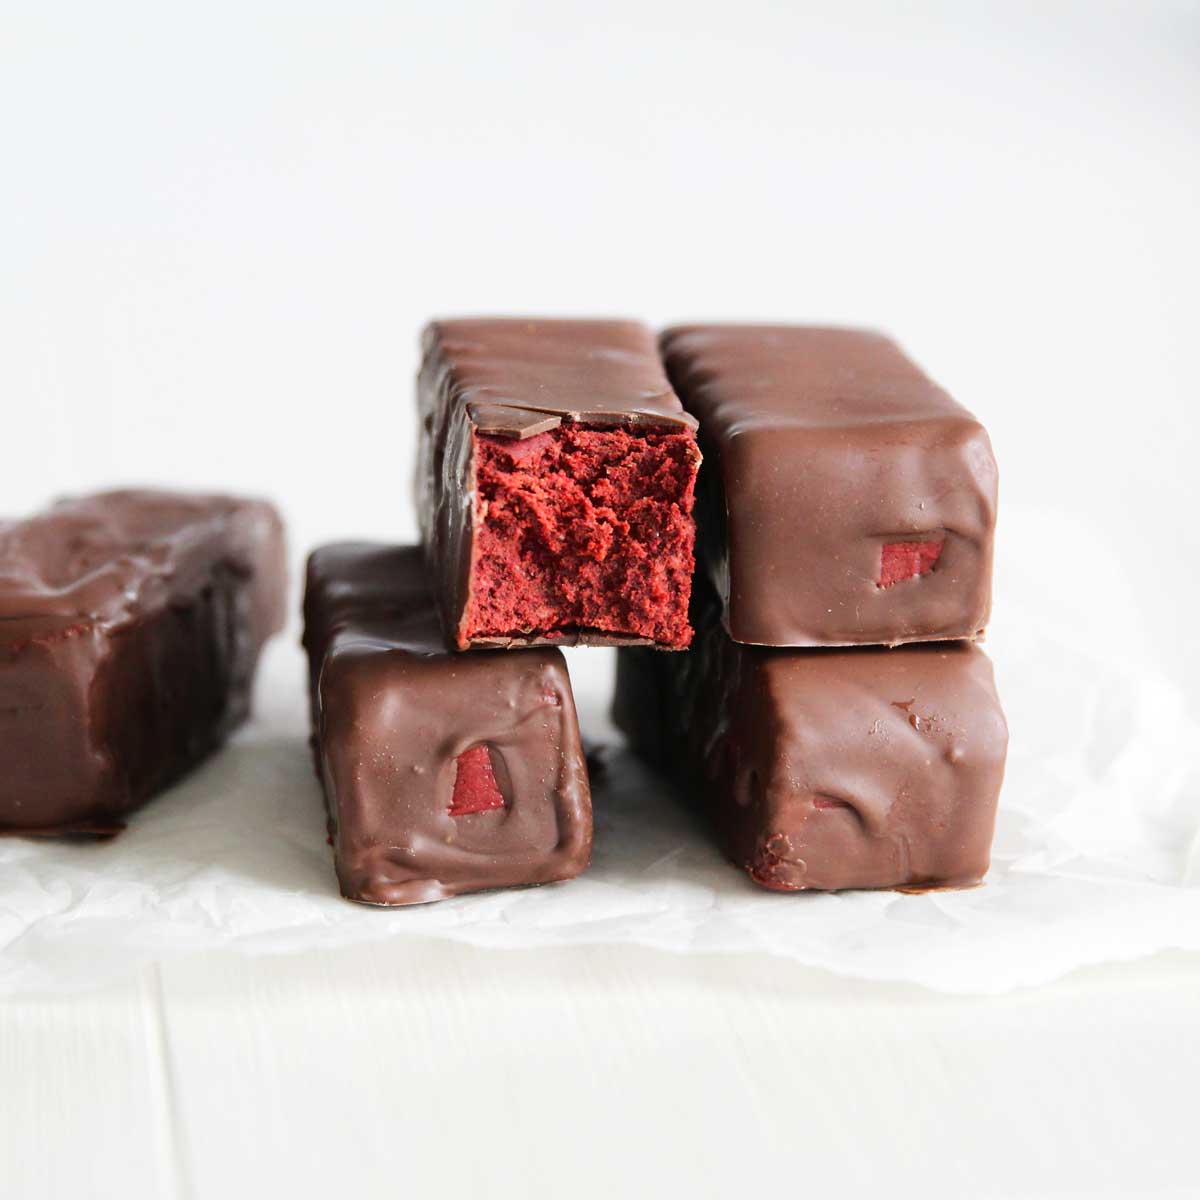 Gluten Free Red Velvet Cake Protein Bars (The Best Guilt-Free Dessert) - Red Velvet Cake Protein Bars